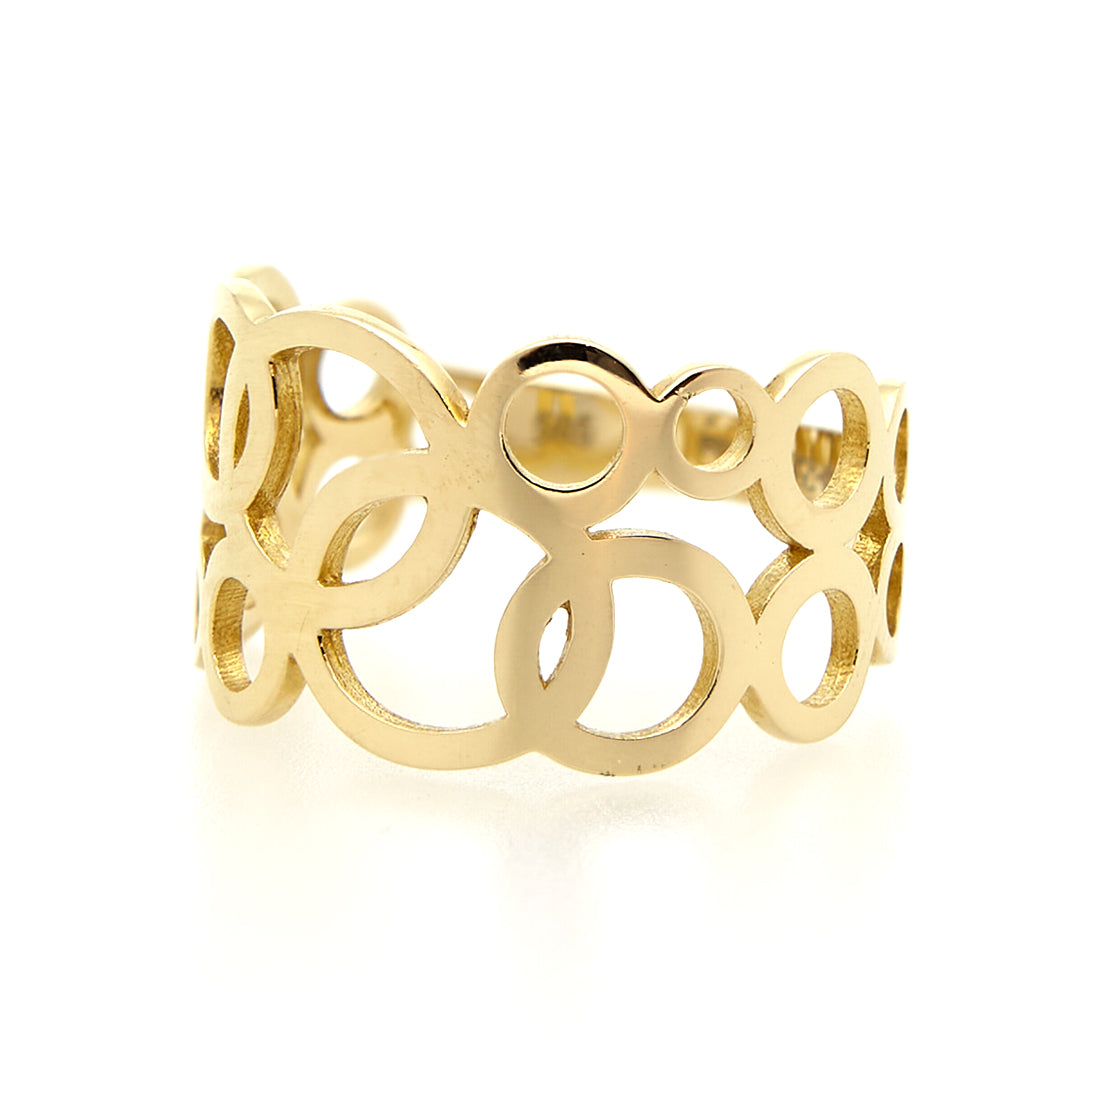 14 carat yellow gold ring